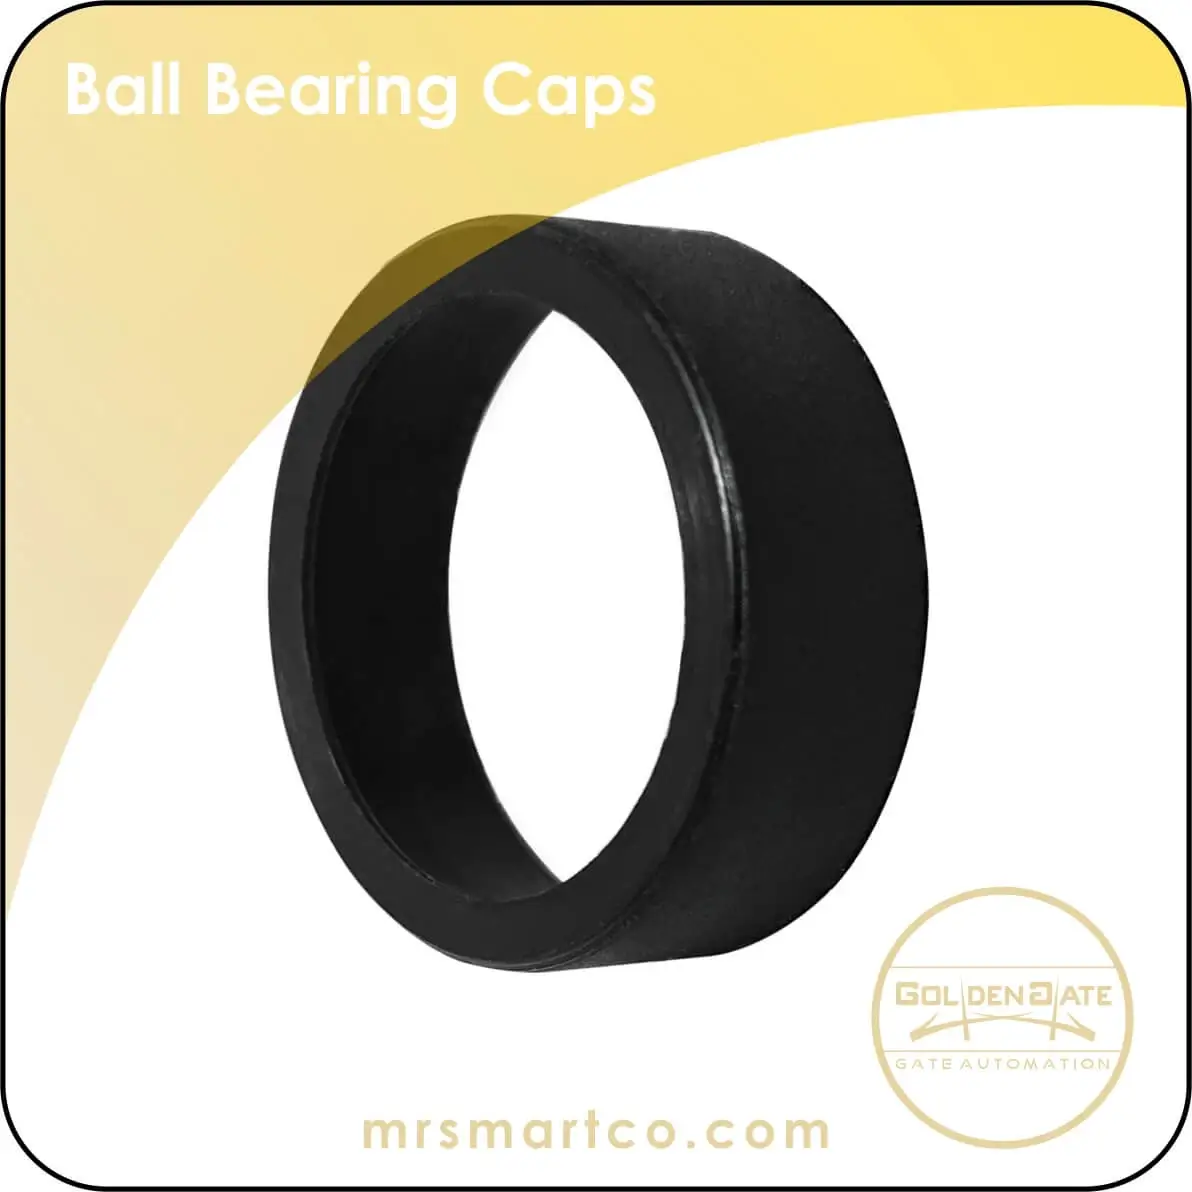 Ball Bearings Caps